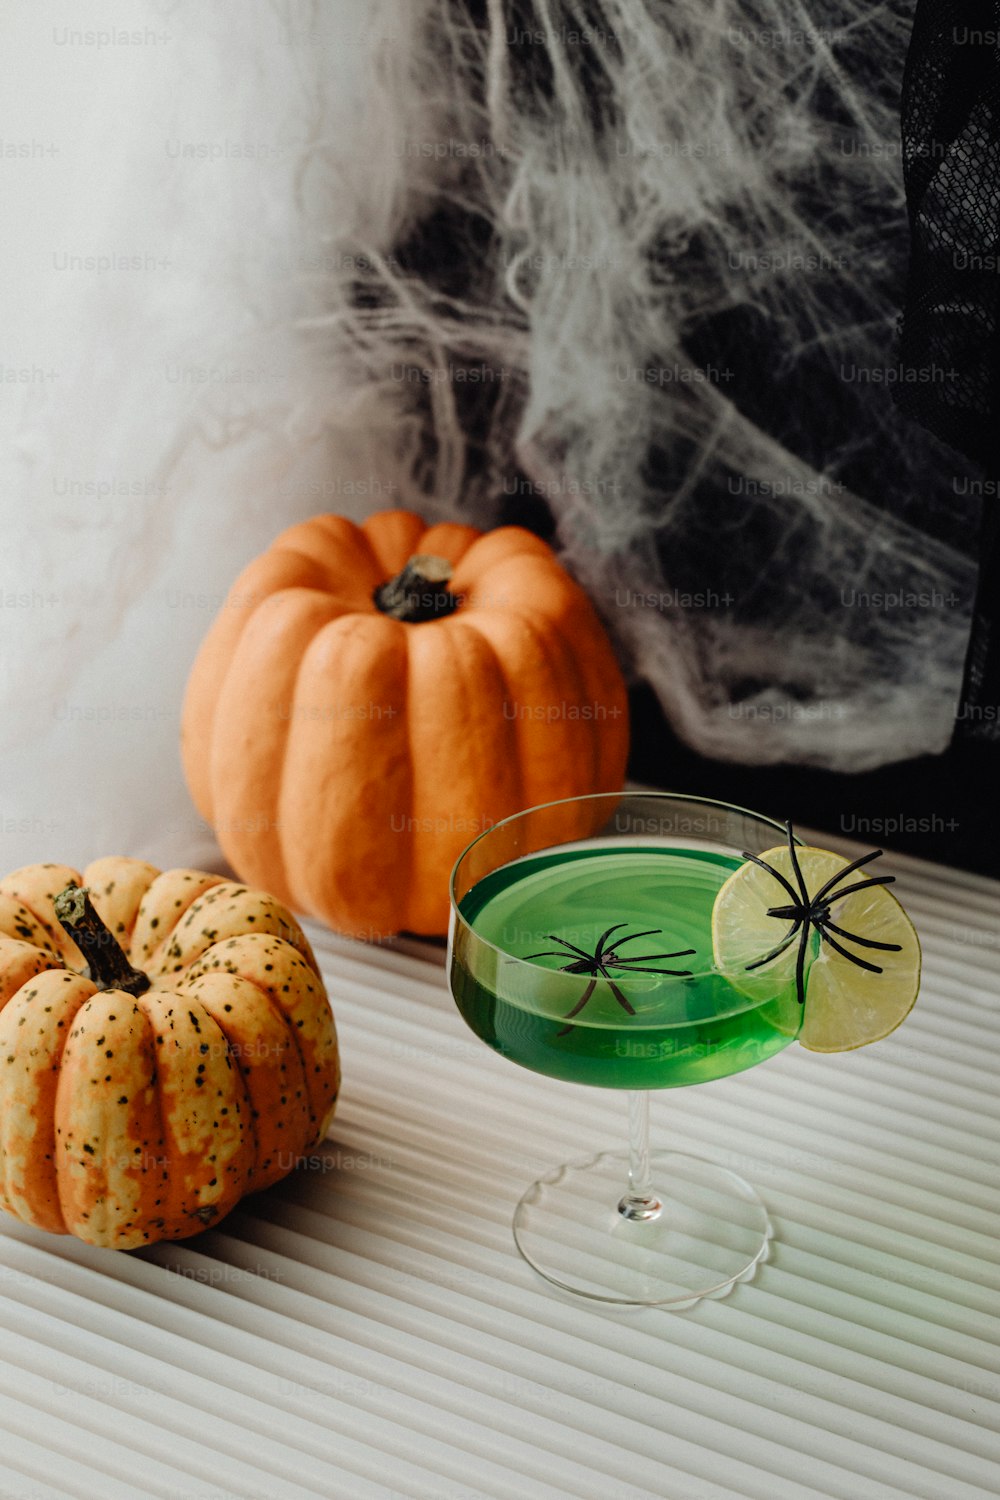 a glass of green liquid next to a pumpkin